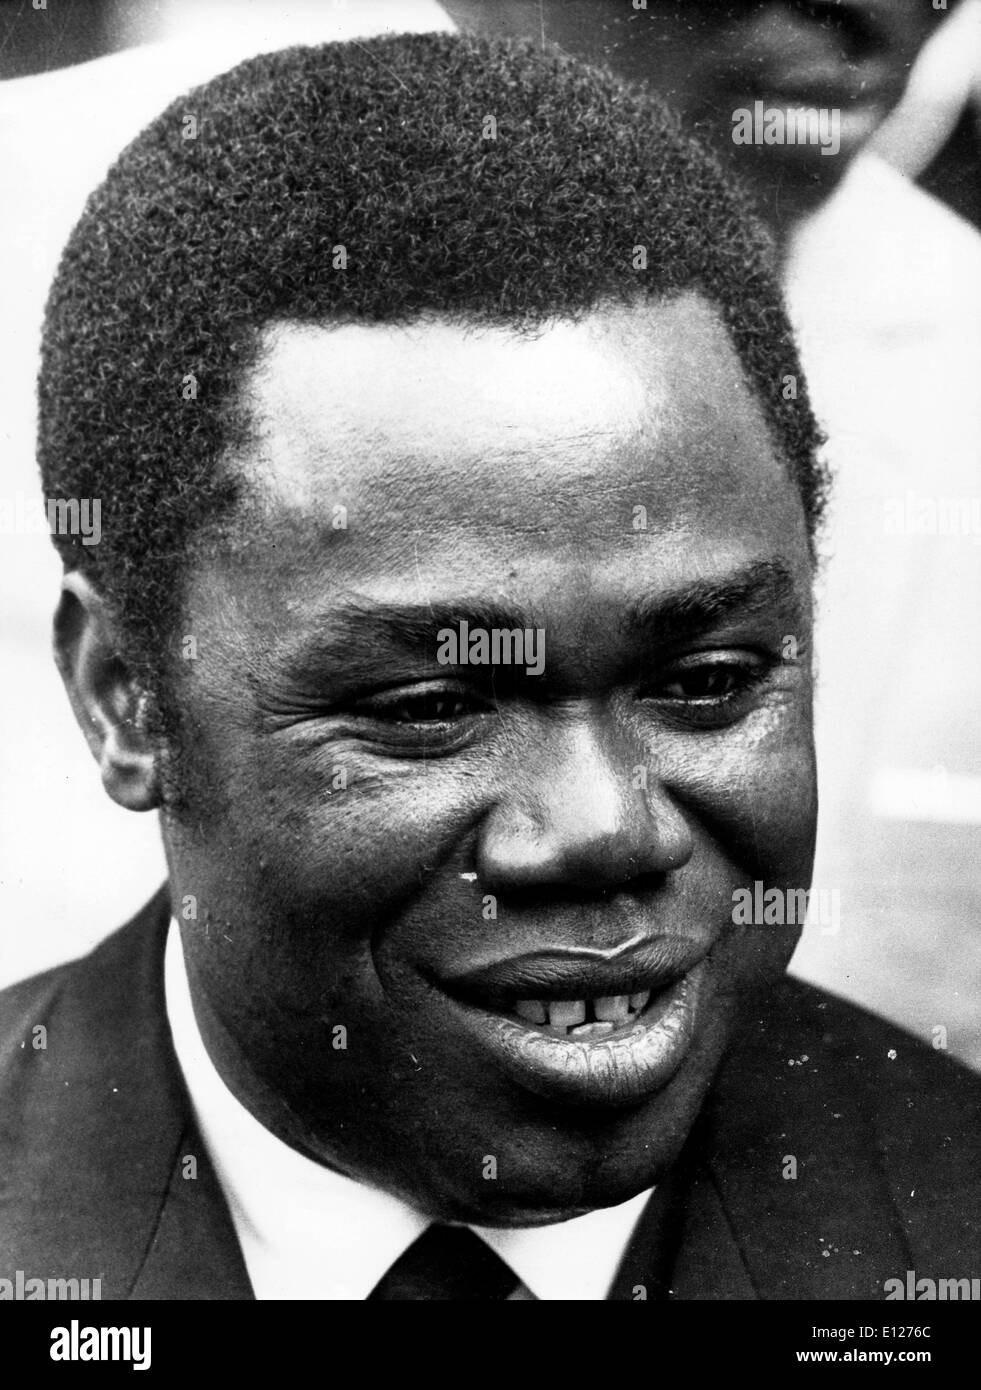 Apr 01, 2009 - Londres, Angleterre, Royaume-Uni - DAVID DACKO (Mars 24, 1930 - 20 novembre 2003) a été le premier président de la République centrafricaine (Image Crédit : KEYSTONE Photos USA/ZUMAPRESS.com) Banque D'Images